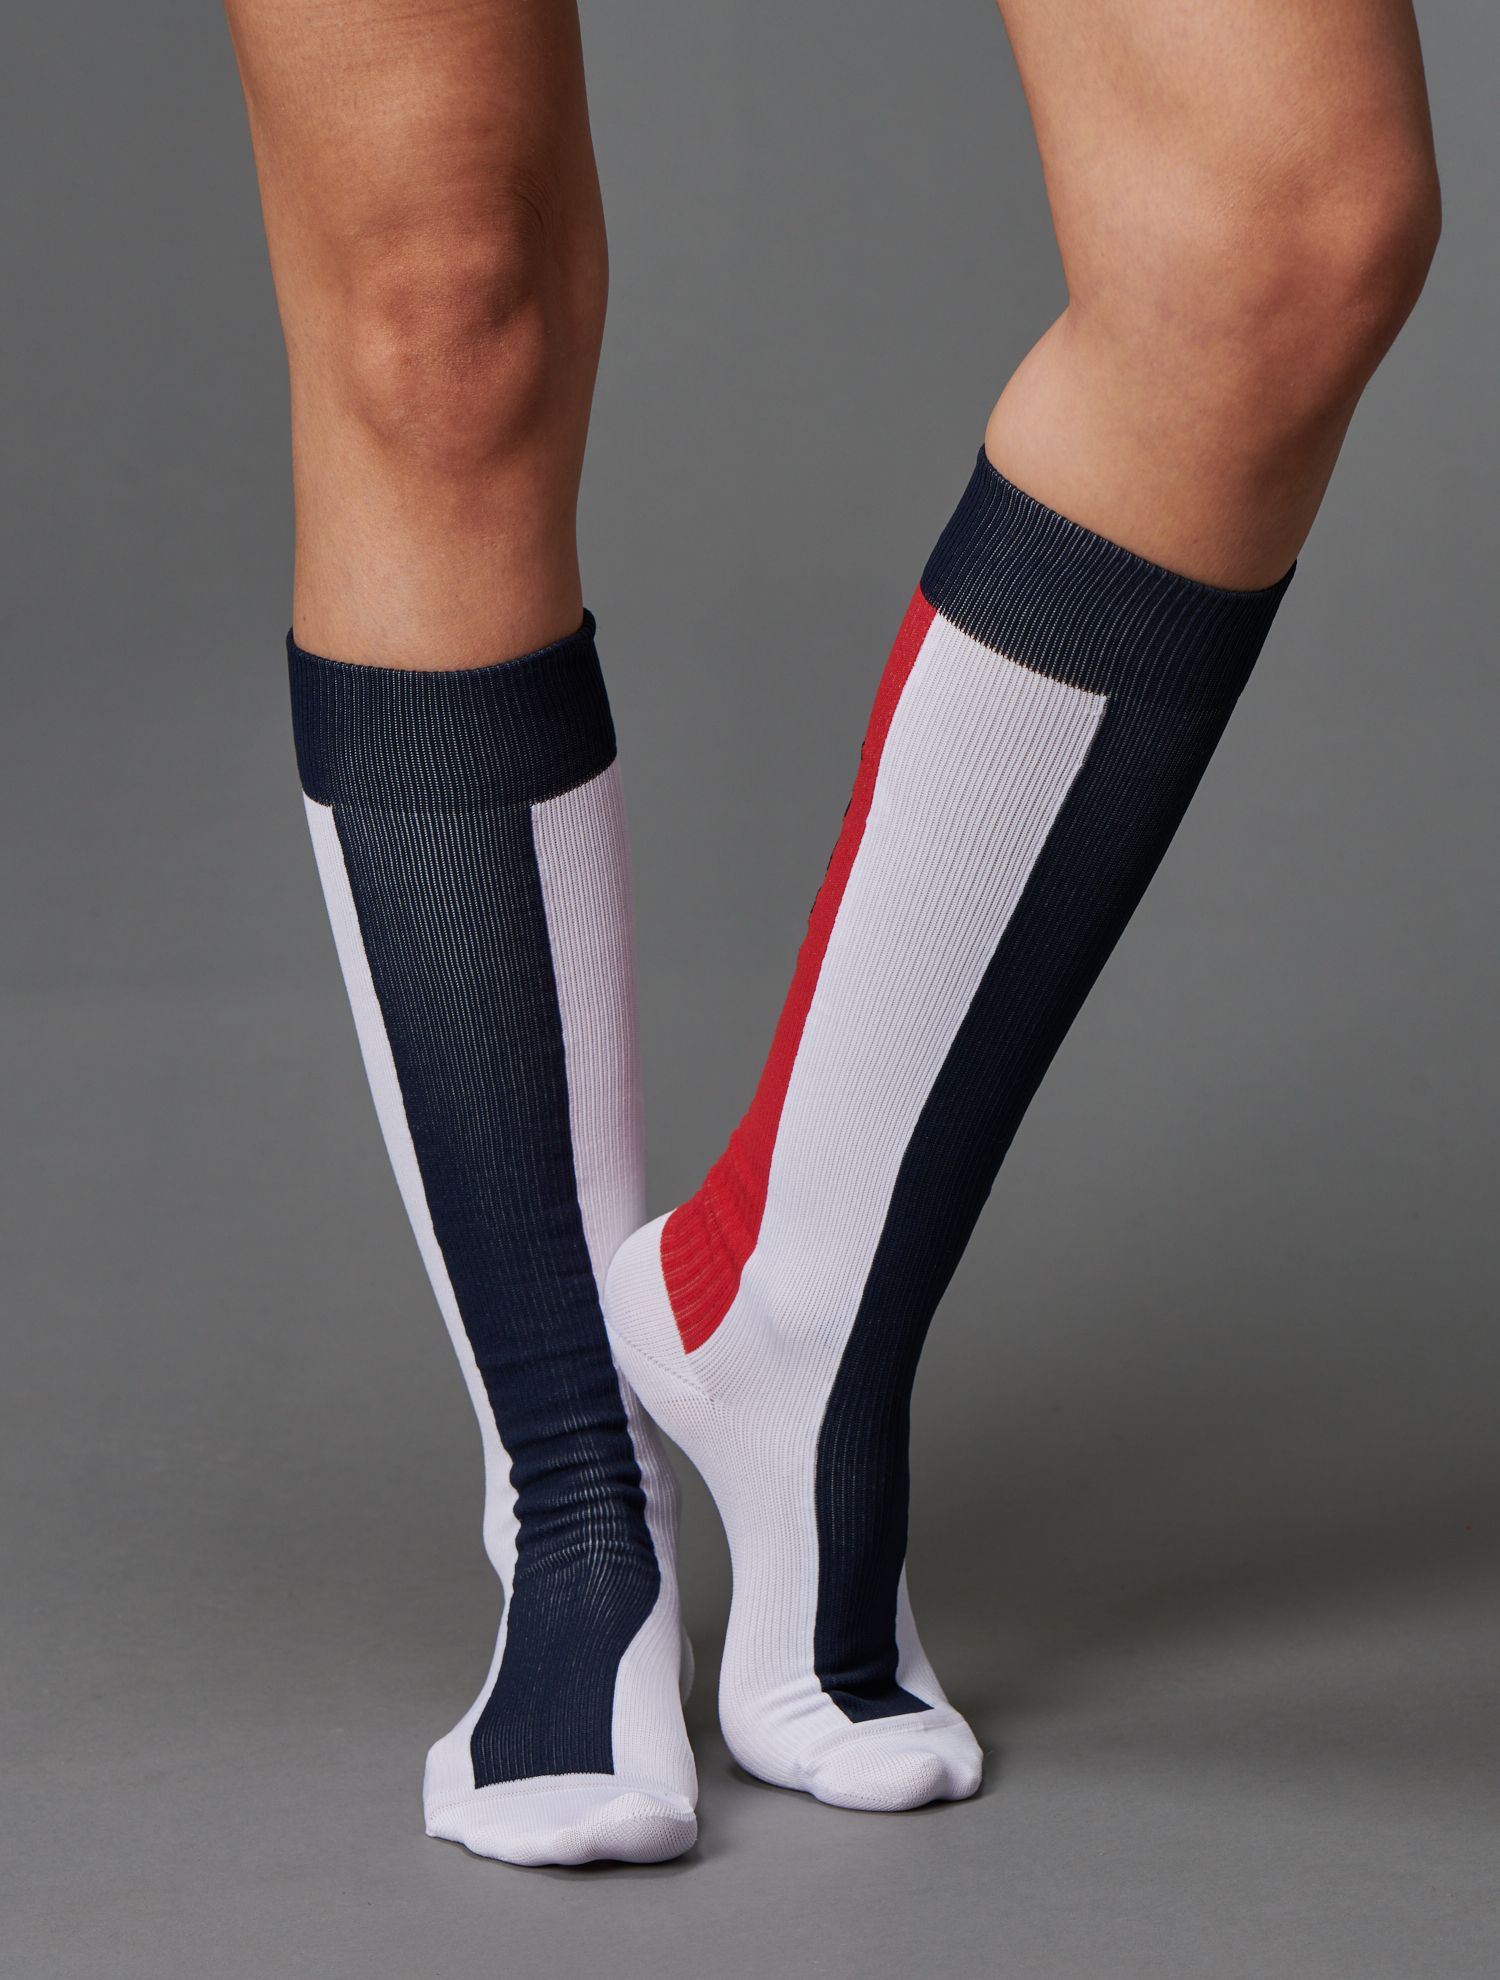 Men's Sock Sizes